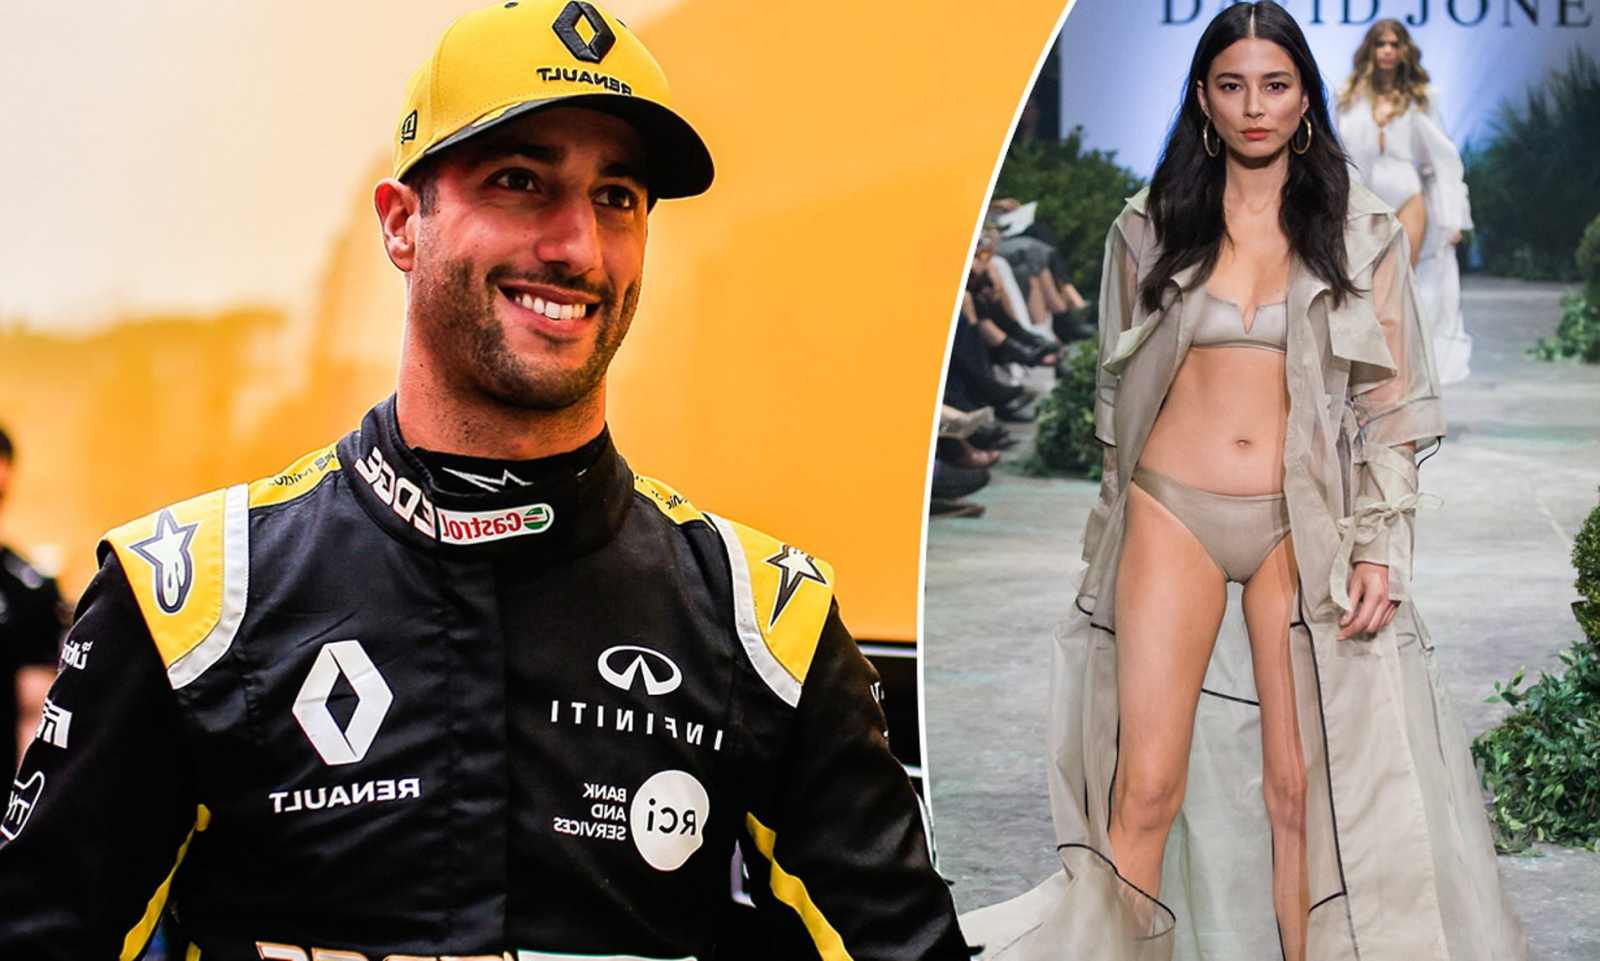 Piloto da Renault, Daniel Ricciardo negou relacionamento com a modelo Jessica Gomes, que contrariou o piloto e confirmou